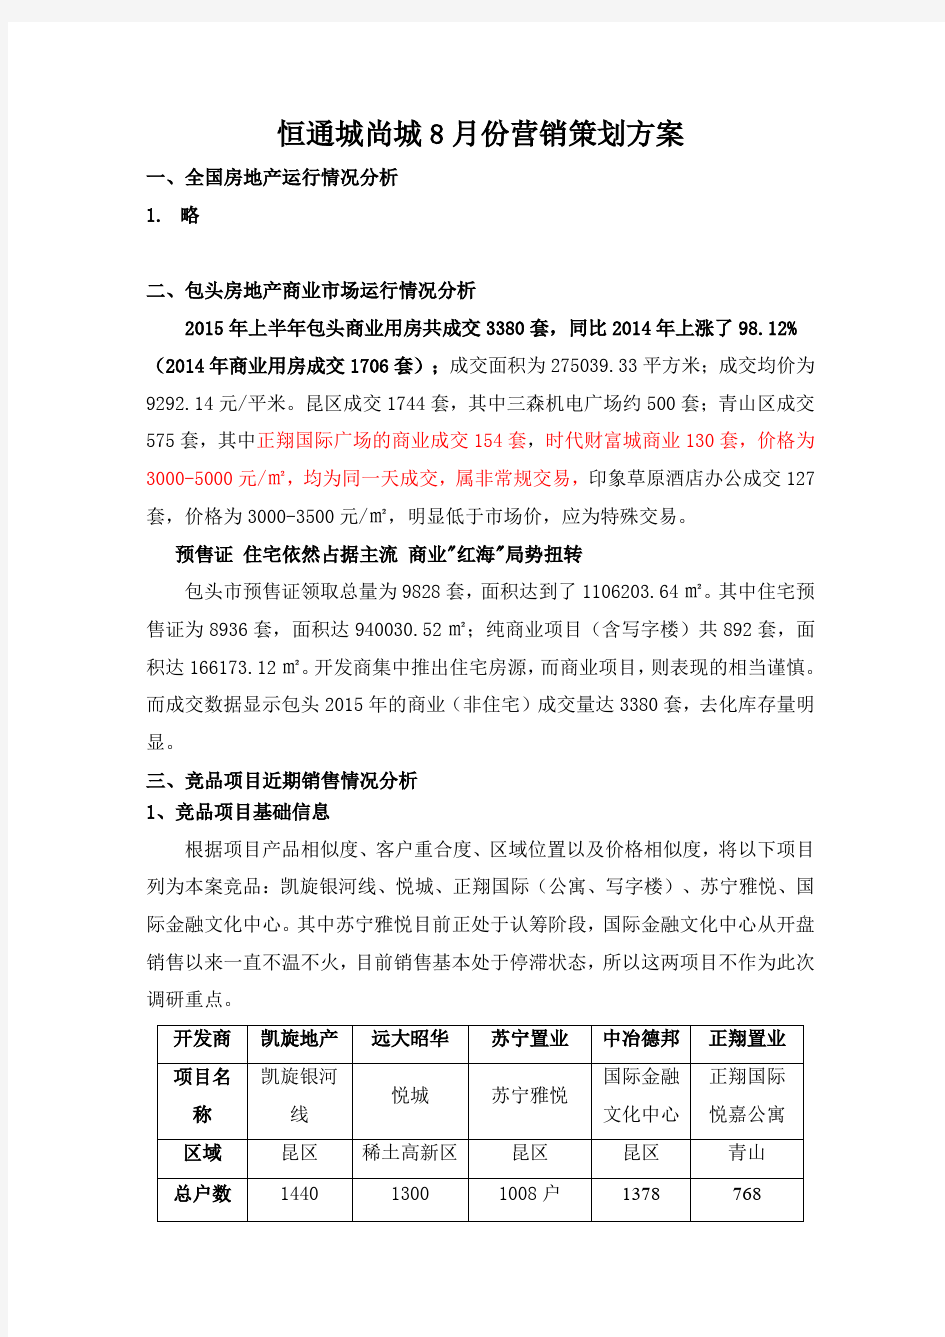 恒通城尚城2015年8月份营销策划方案